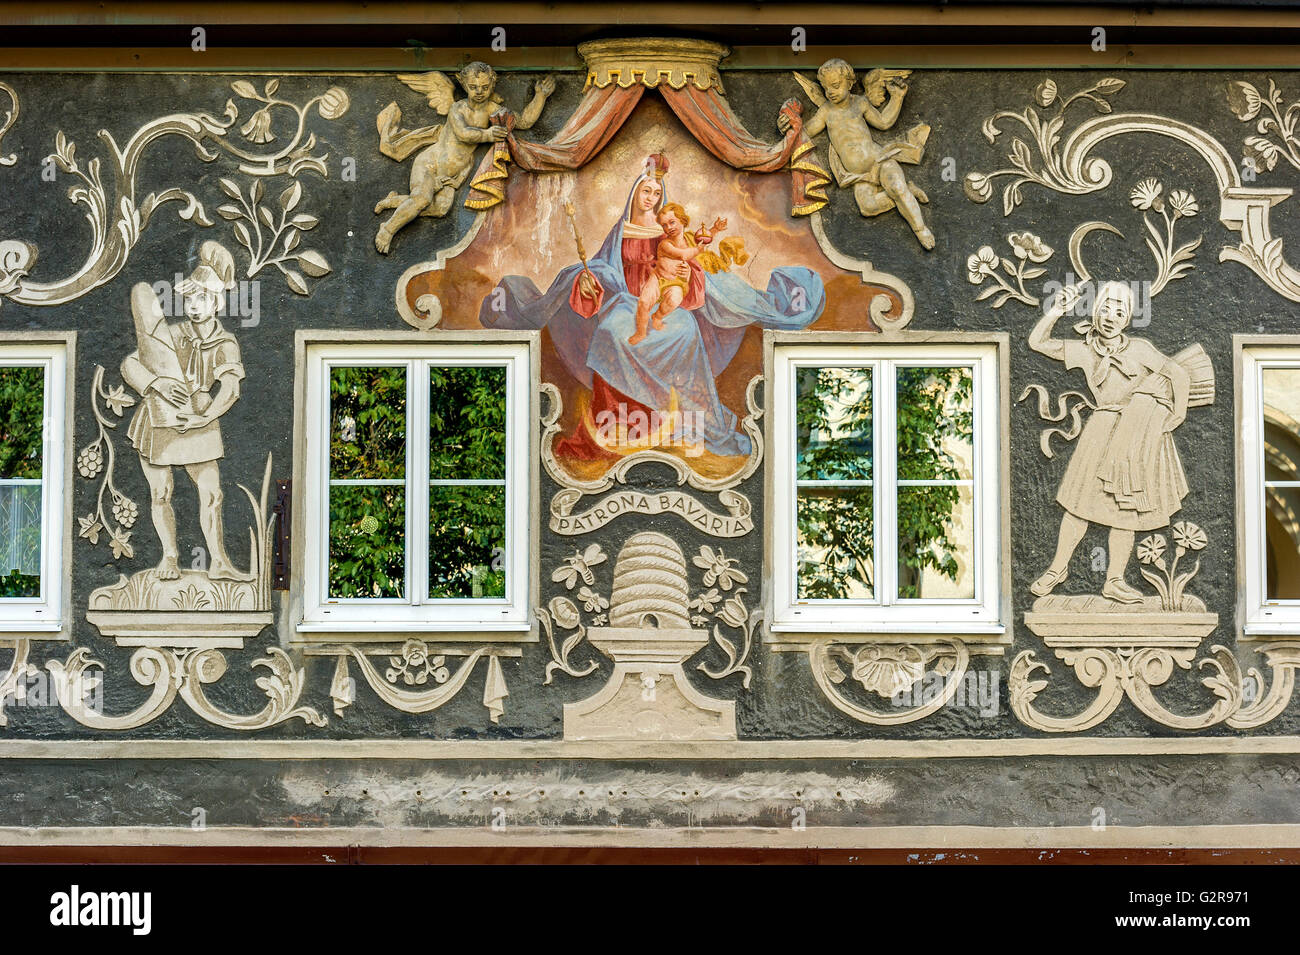 Ex-pâte avec la peinture murale de la Patrona Bavaria, anges en stuc, homme à Sugarloaf, ruche, femme avec des céréales Banque D'Images